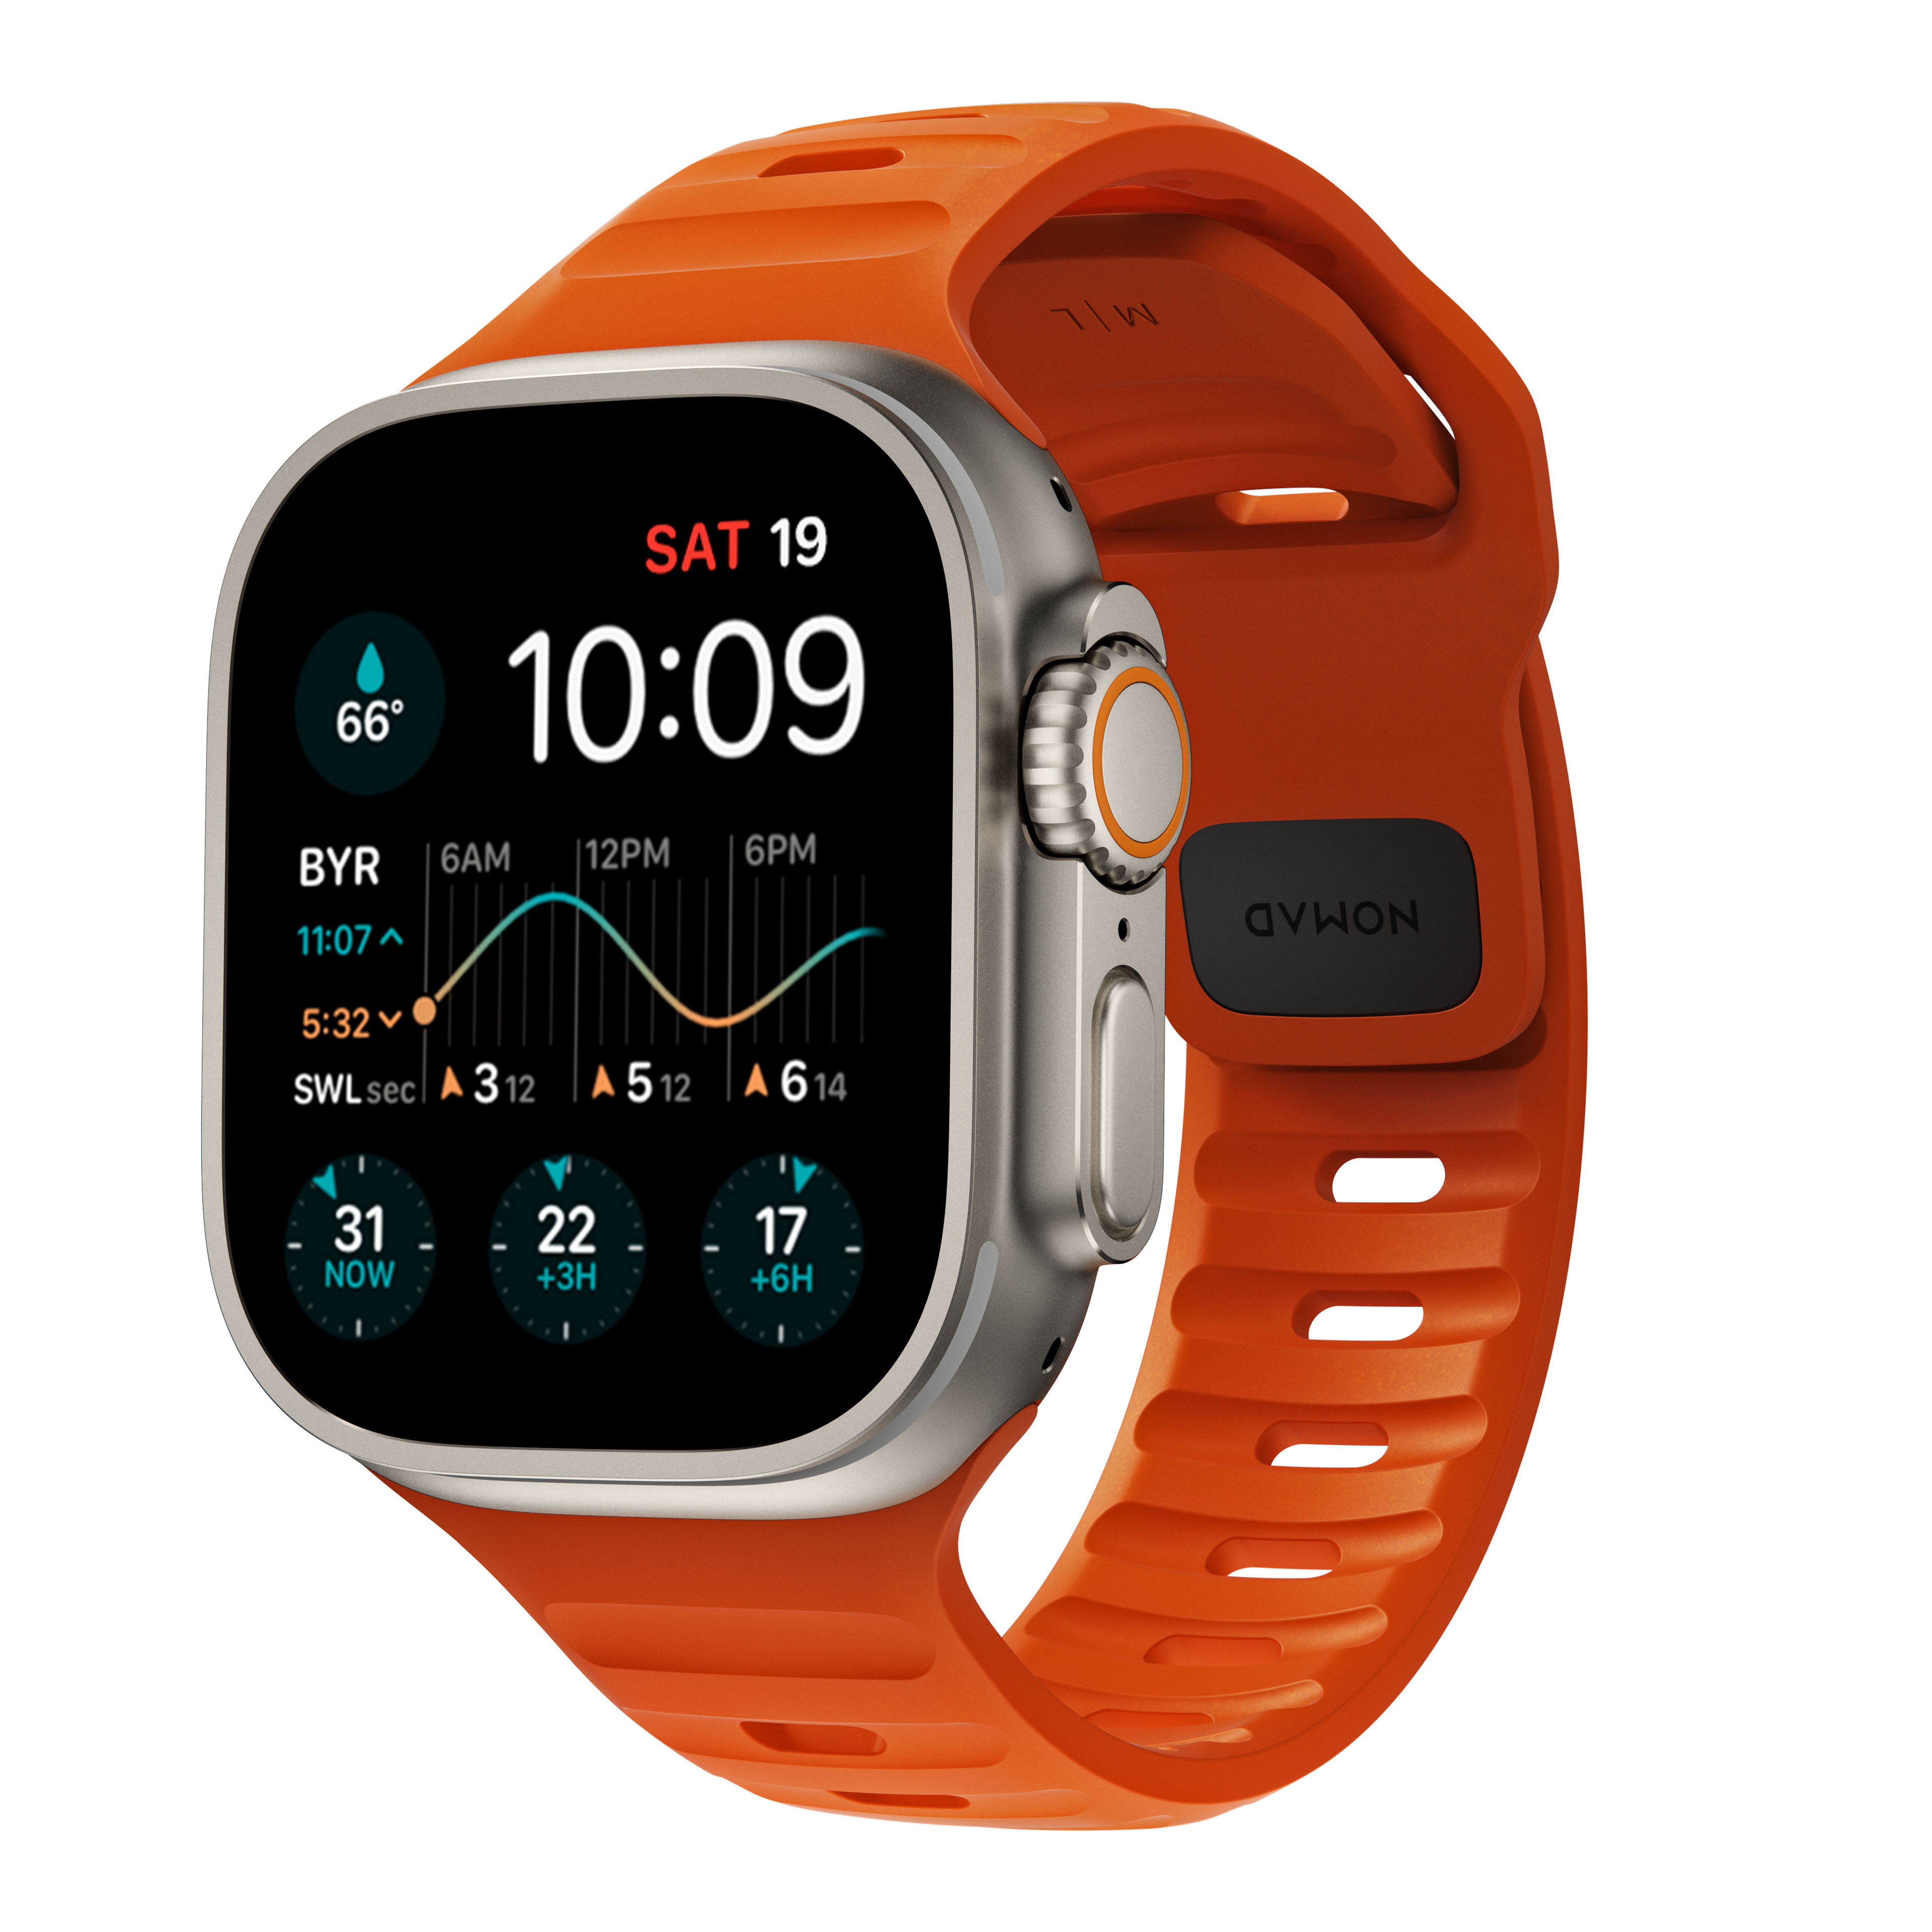 Apple Watch Ultra Armbänder & Schutzzubehör kaufen - PhoneLife